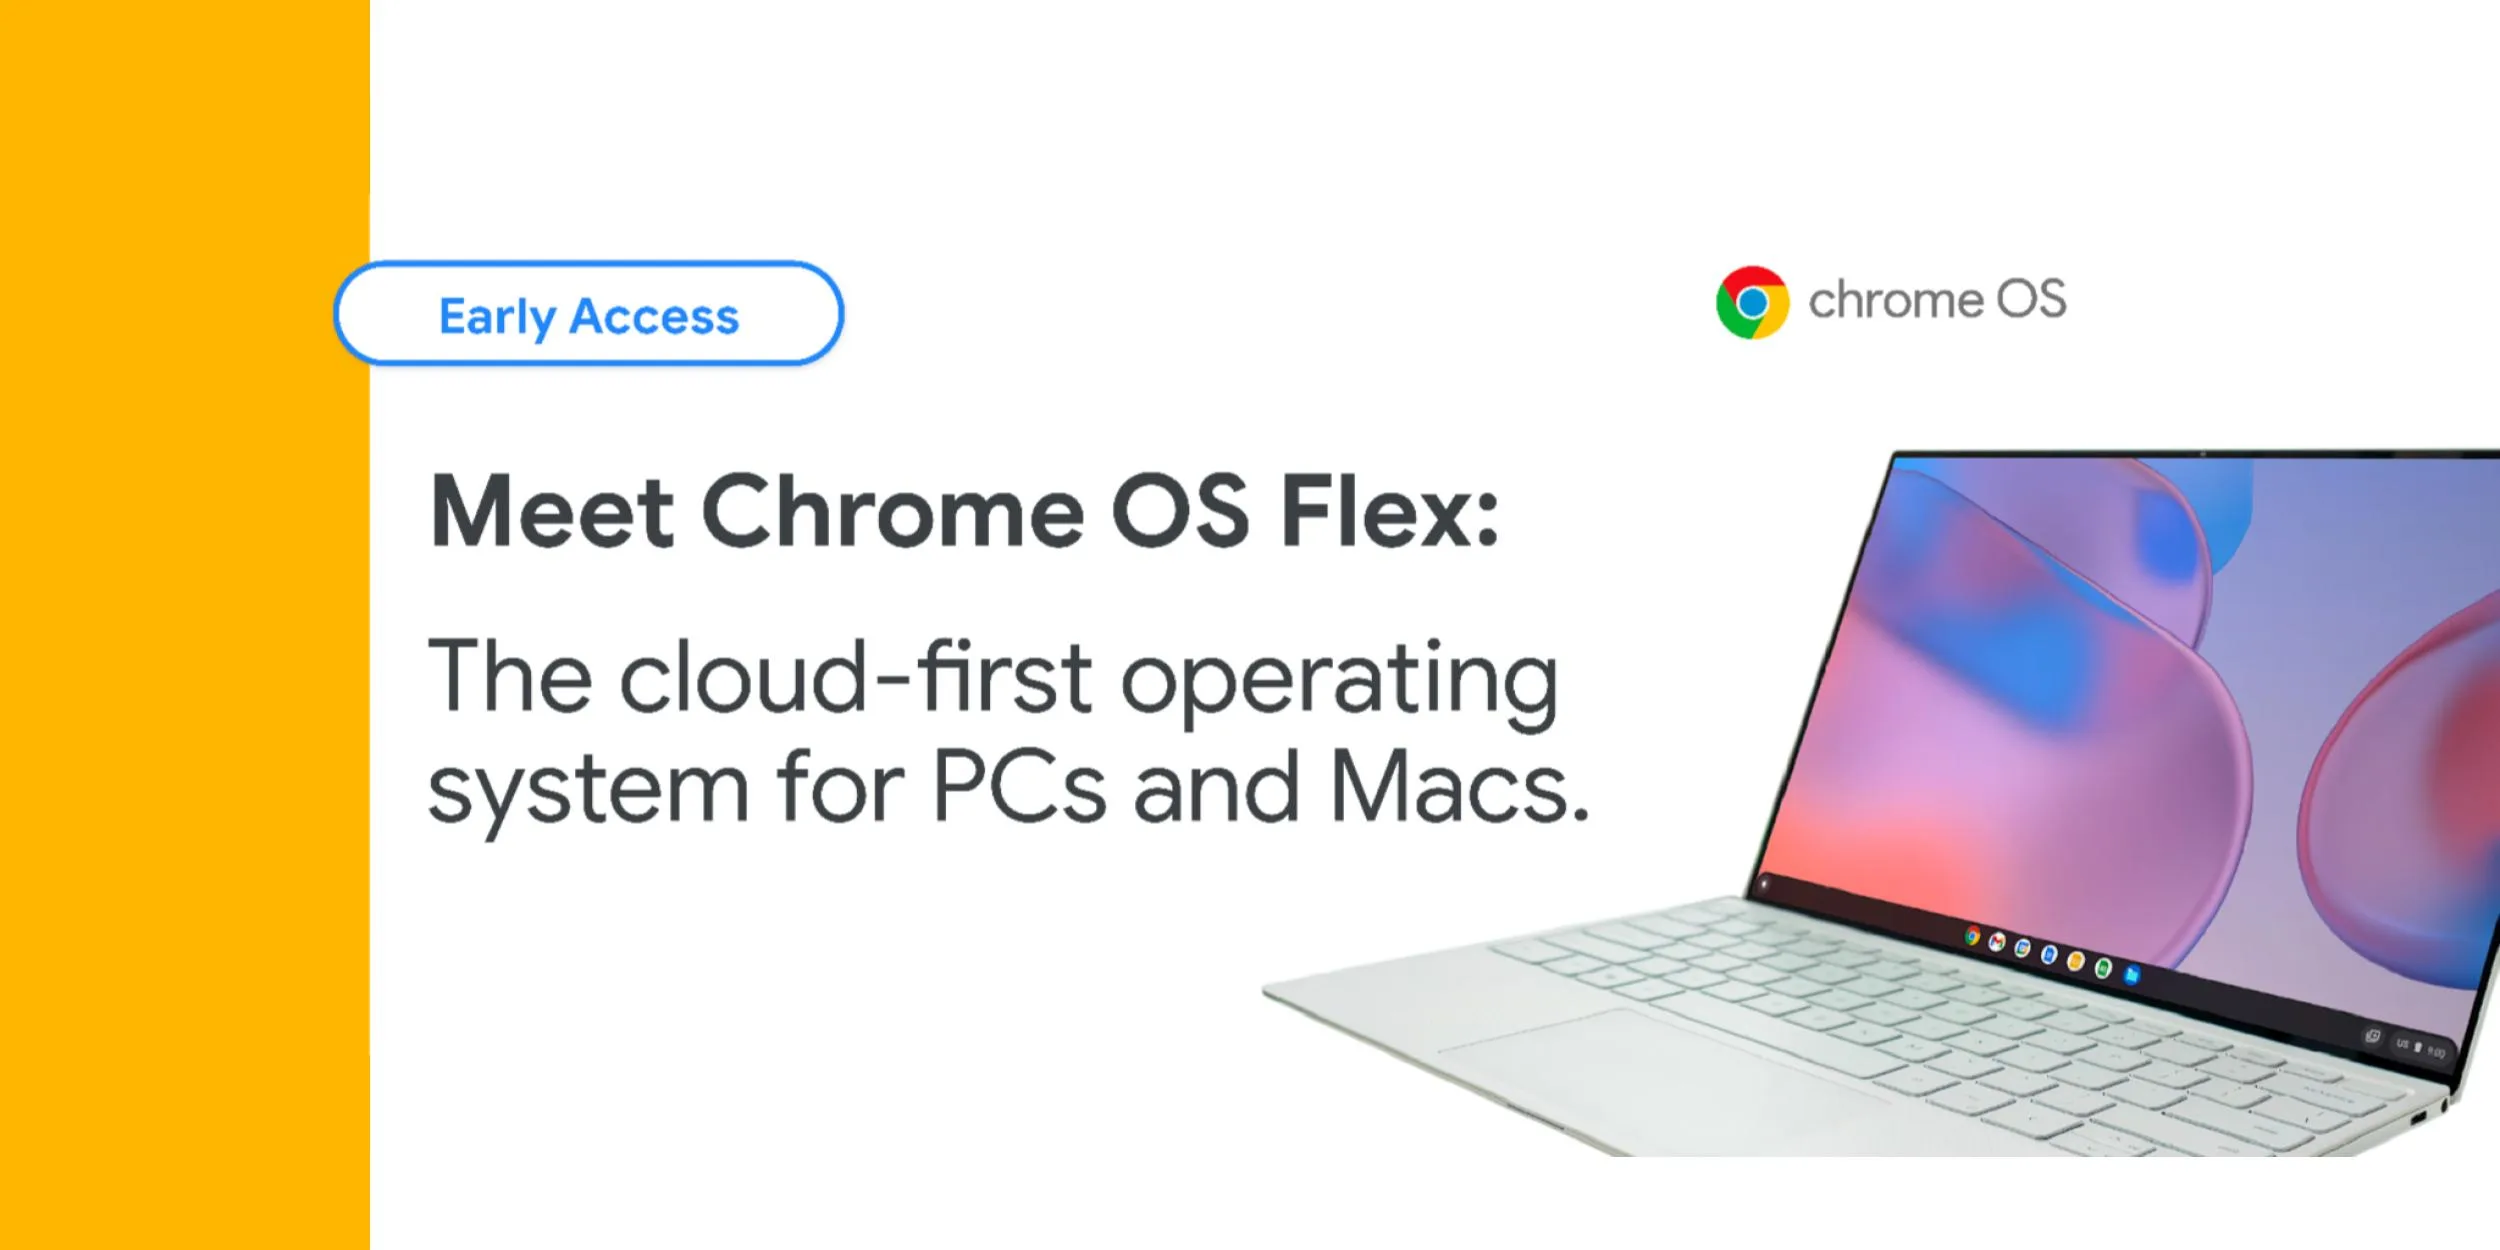 Chrome OS Flex: il sistema operativo di Google che si installa su vecchi pc e Mac